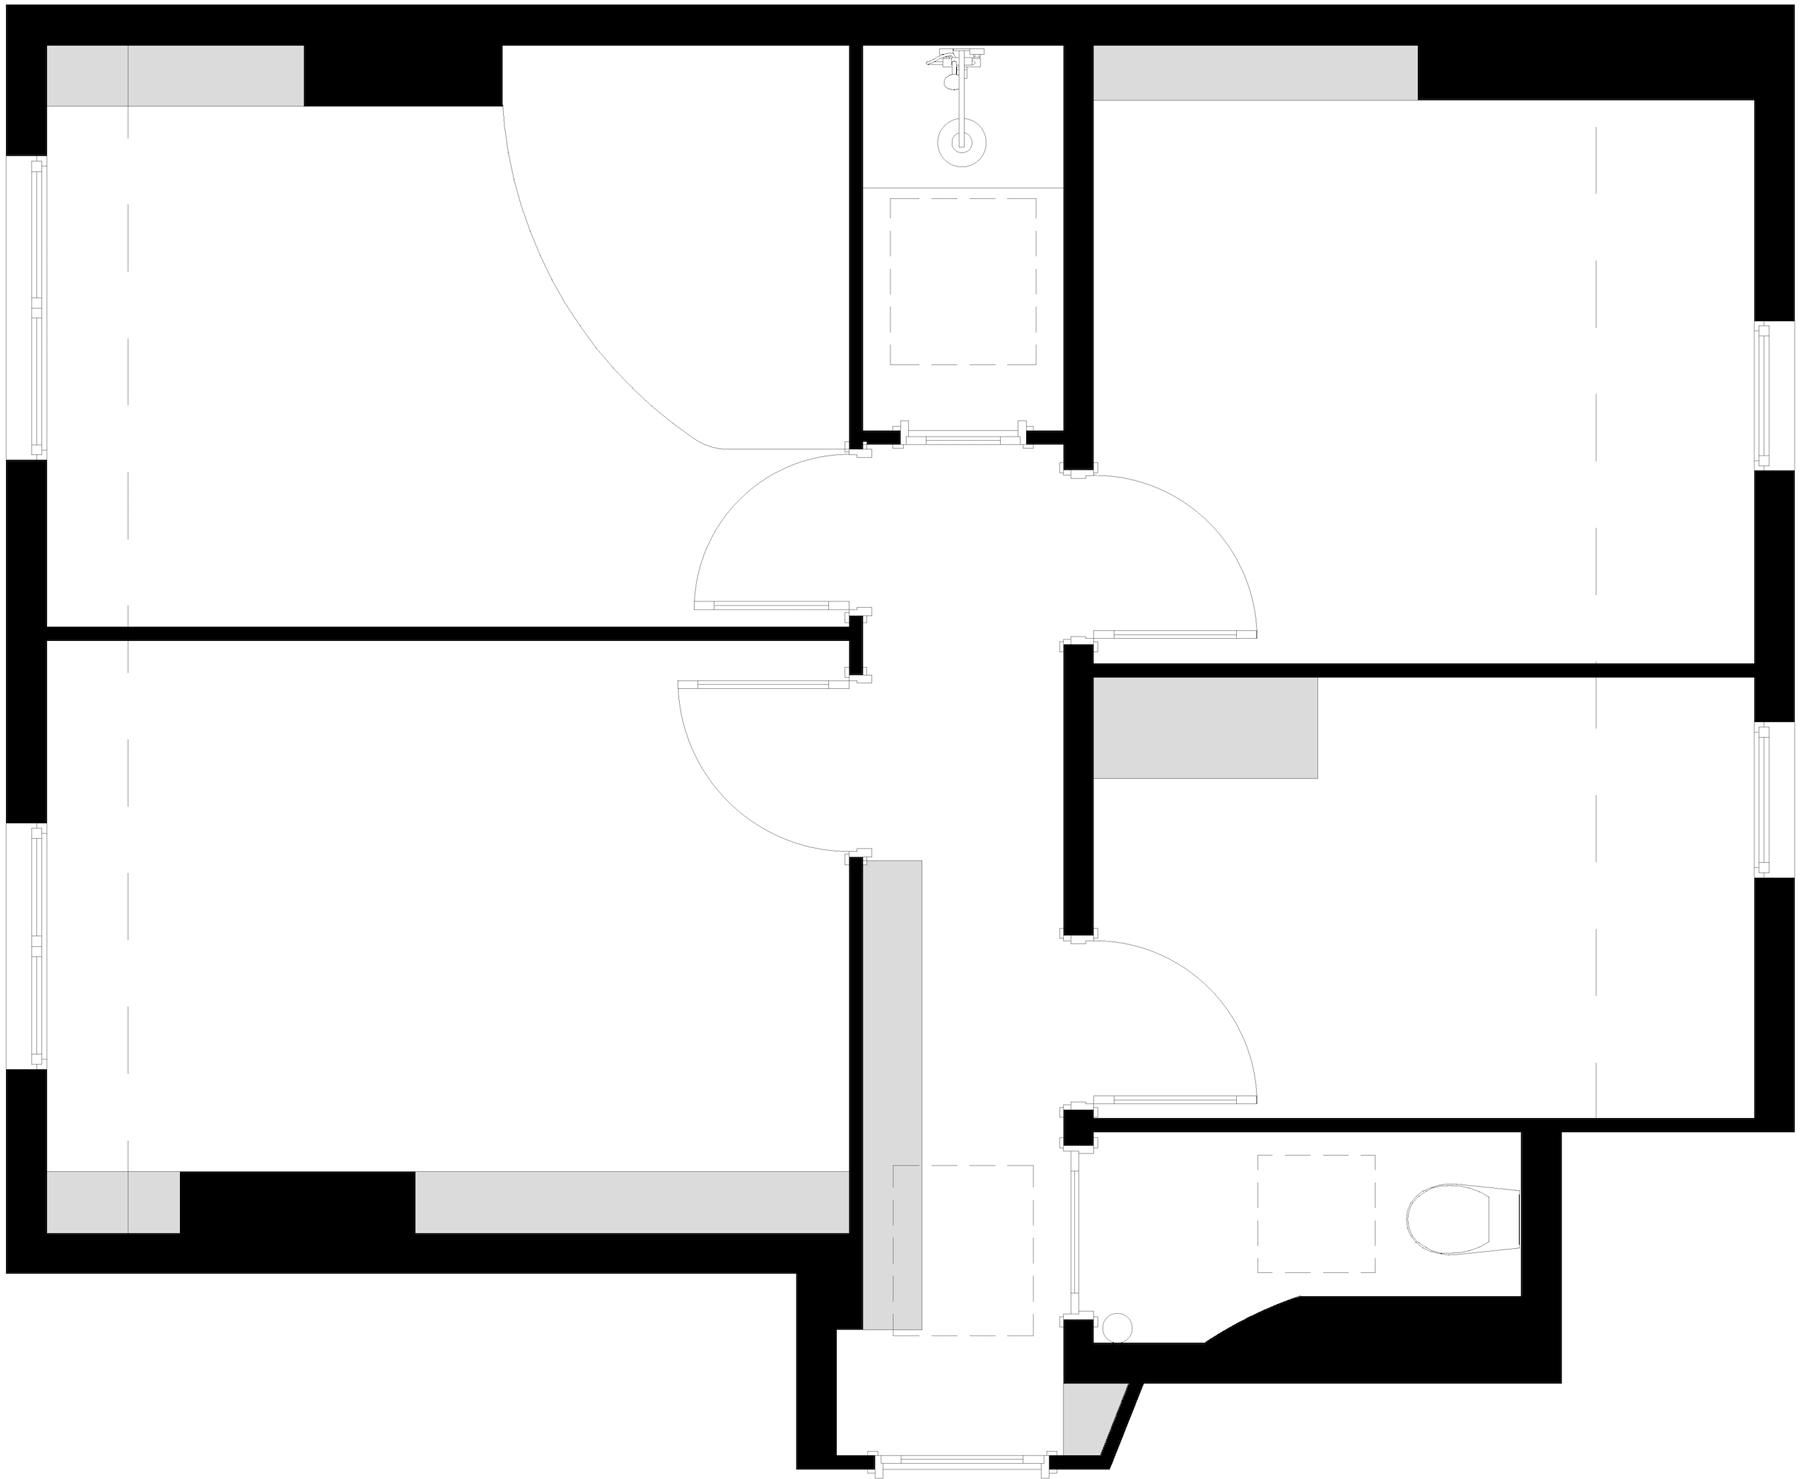 Plan 2D existant d'un appartement à Paris